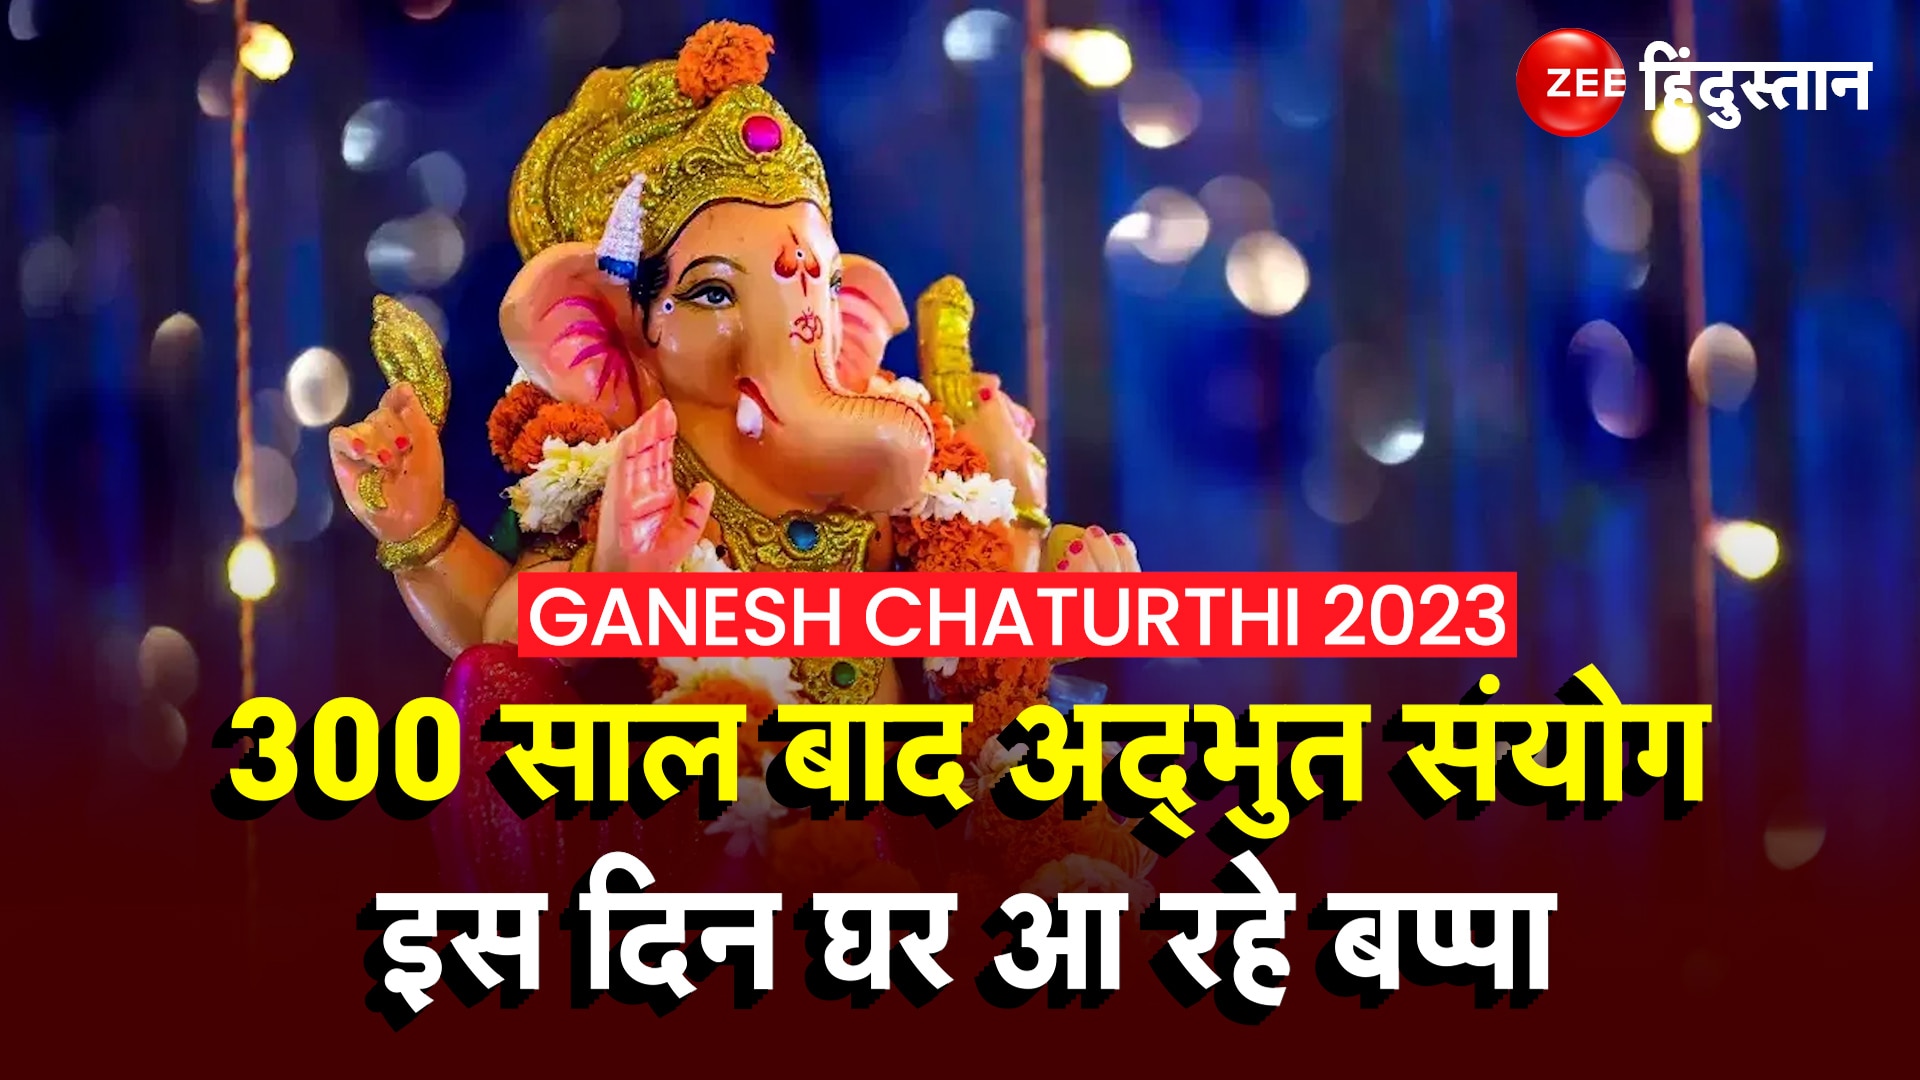 Ganesh Chaturthi 2023 Date Shubh Muhurat Time Yog And Ganpati Bappa Sthapna Mahatva Ganesh 8838